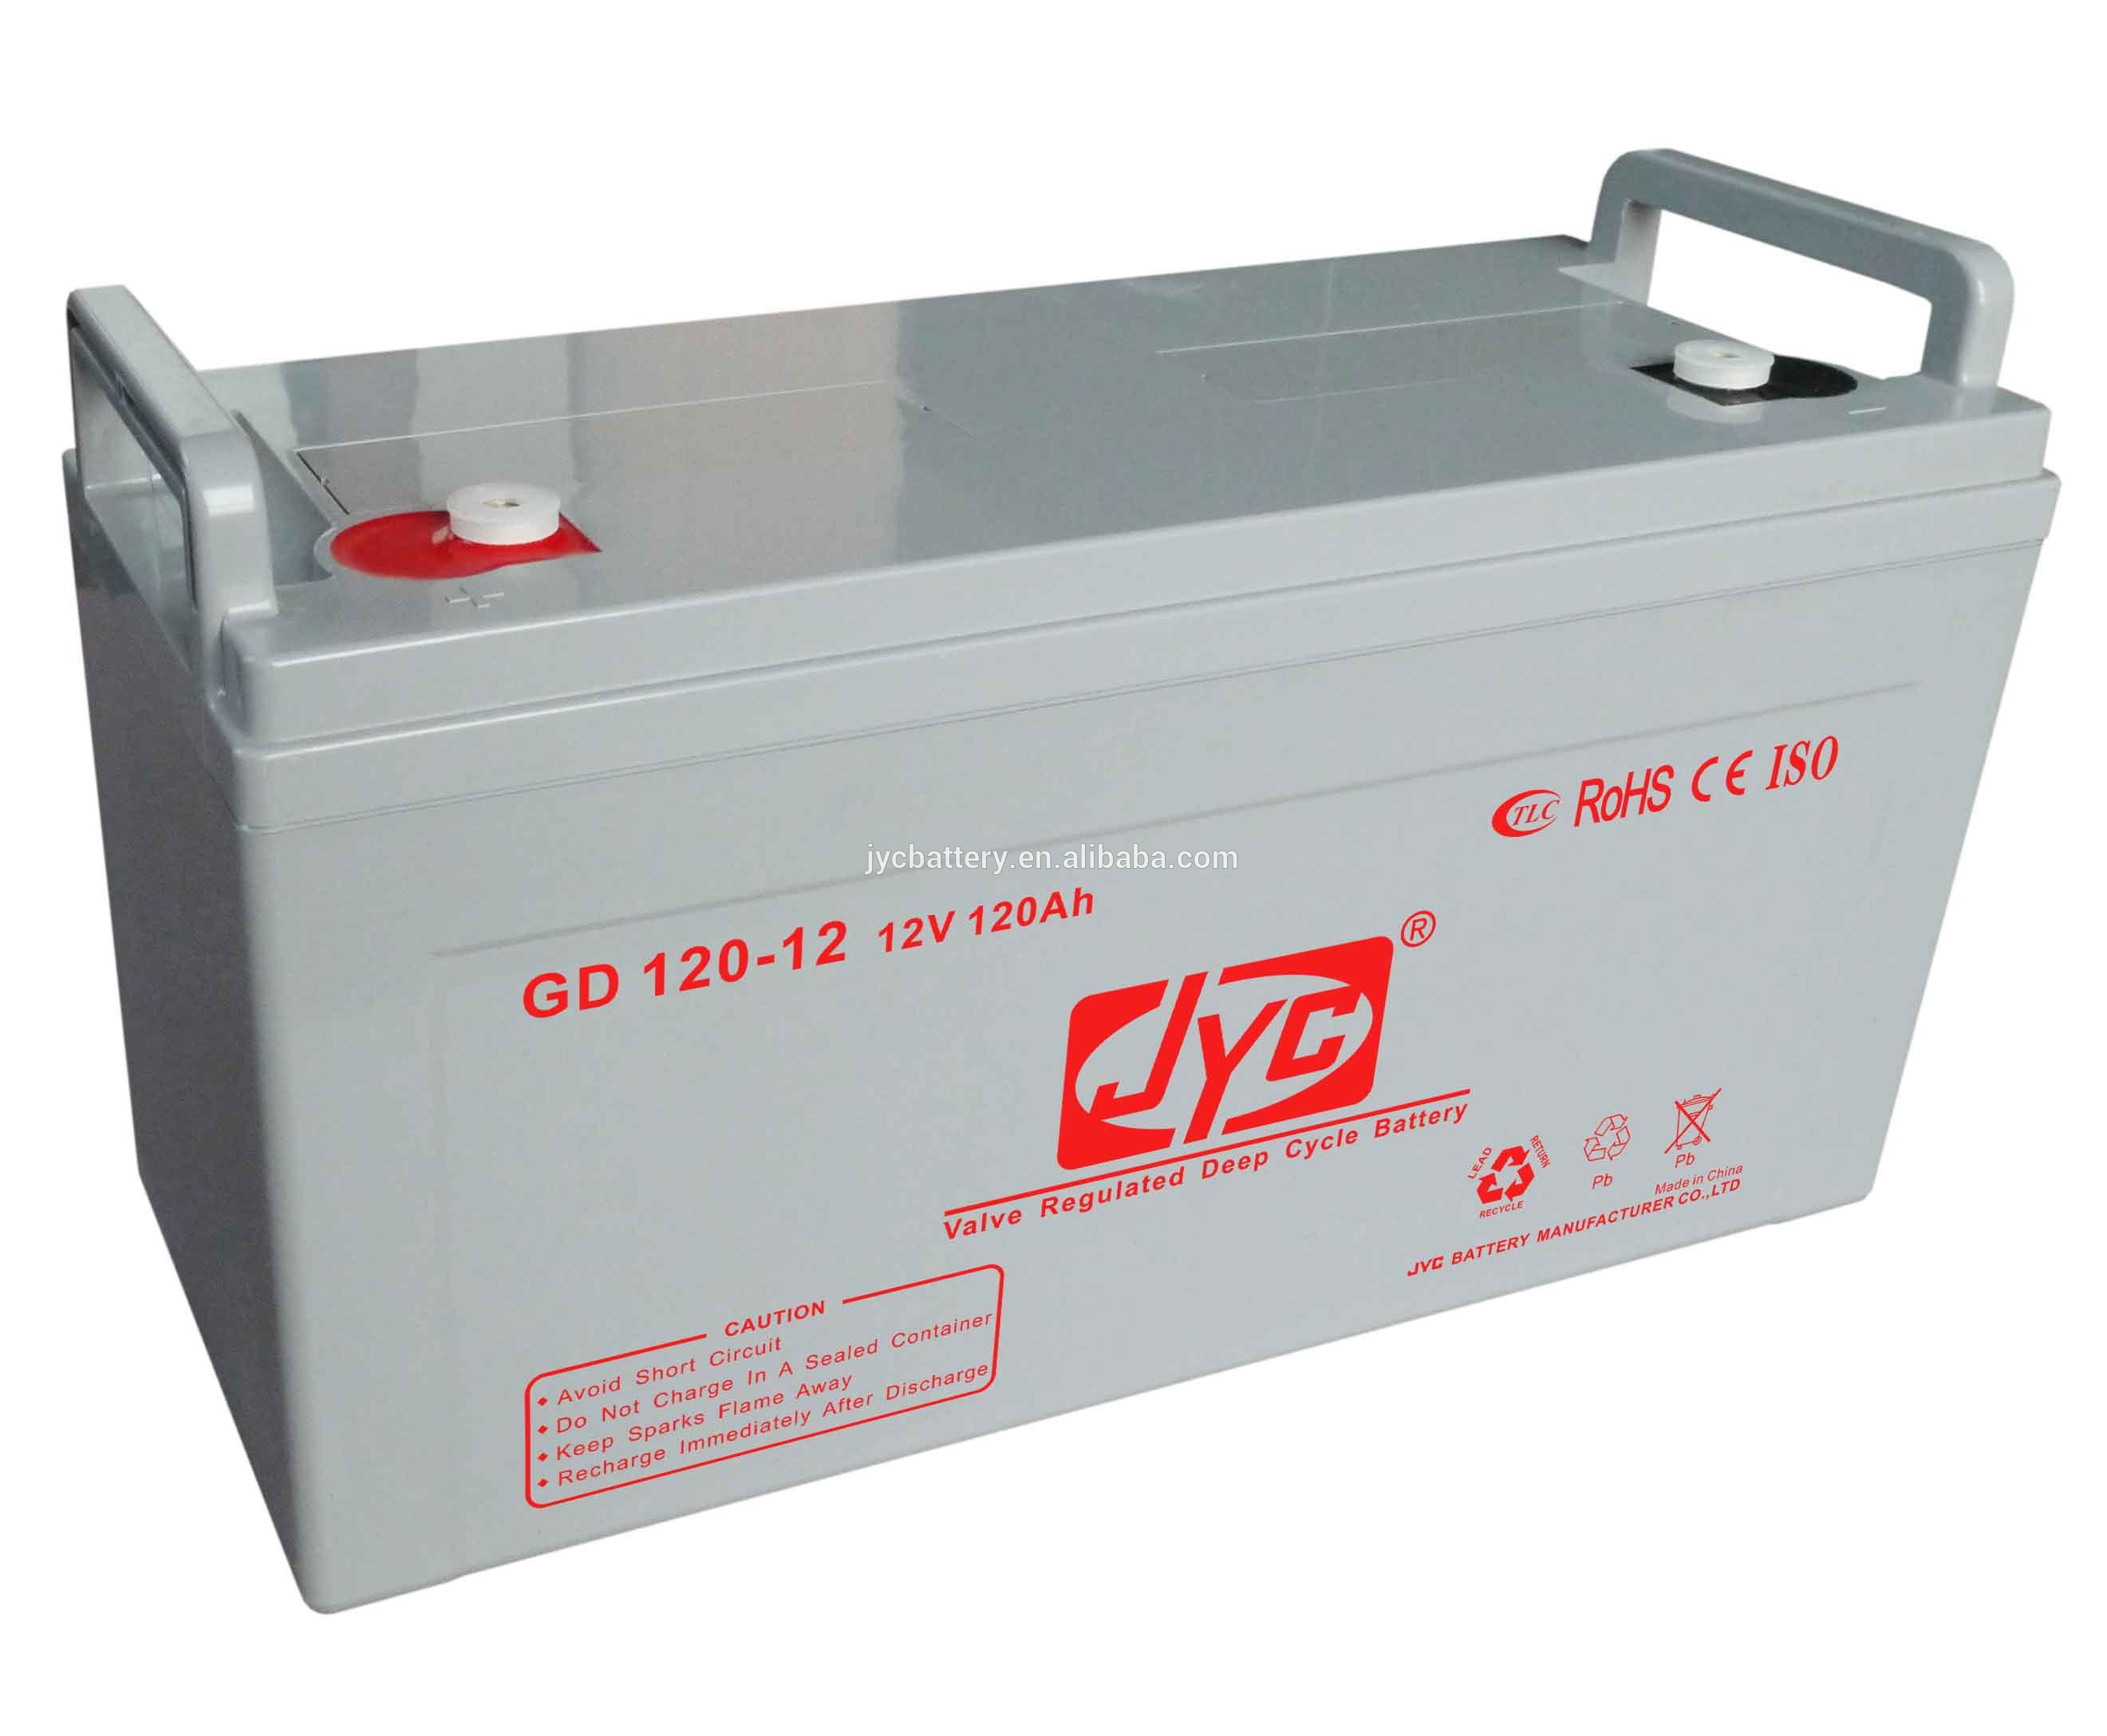 Universal Power AGM UPC12-120 12V 120Ah (C100) Wohnmobilbatterie